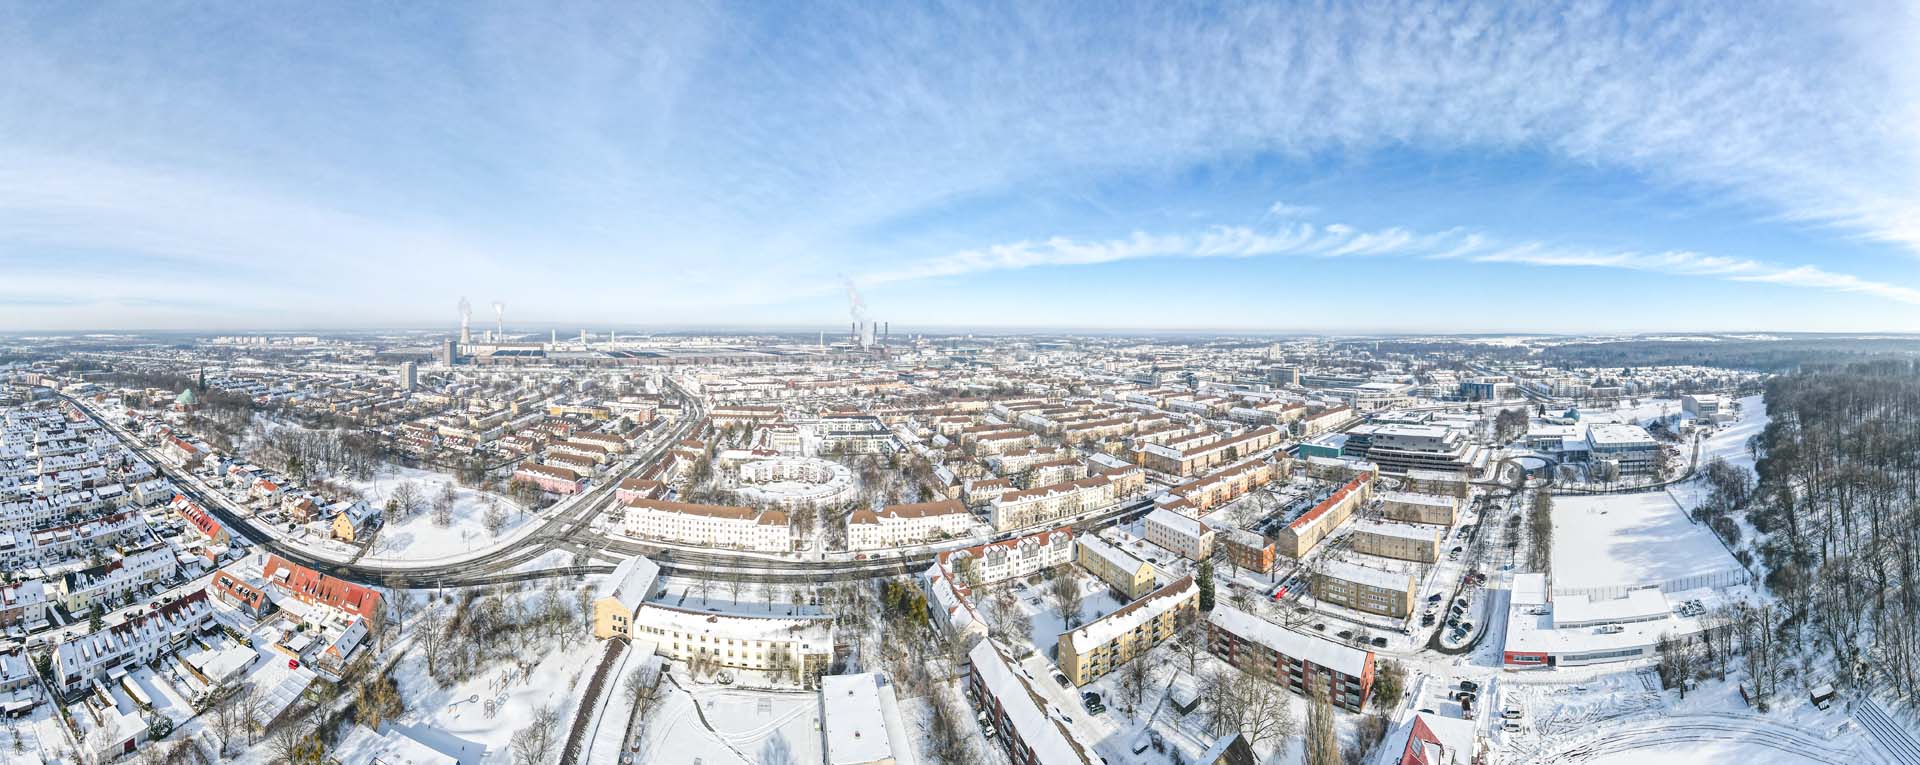 Man blickt aus der Luft in Panoramasicht auf das verschneite Wolfsburg